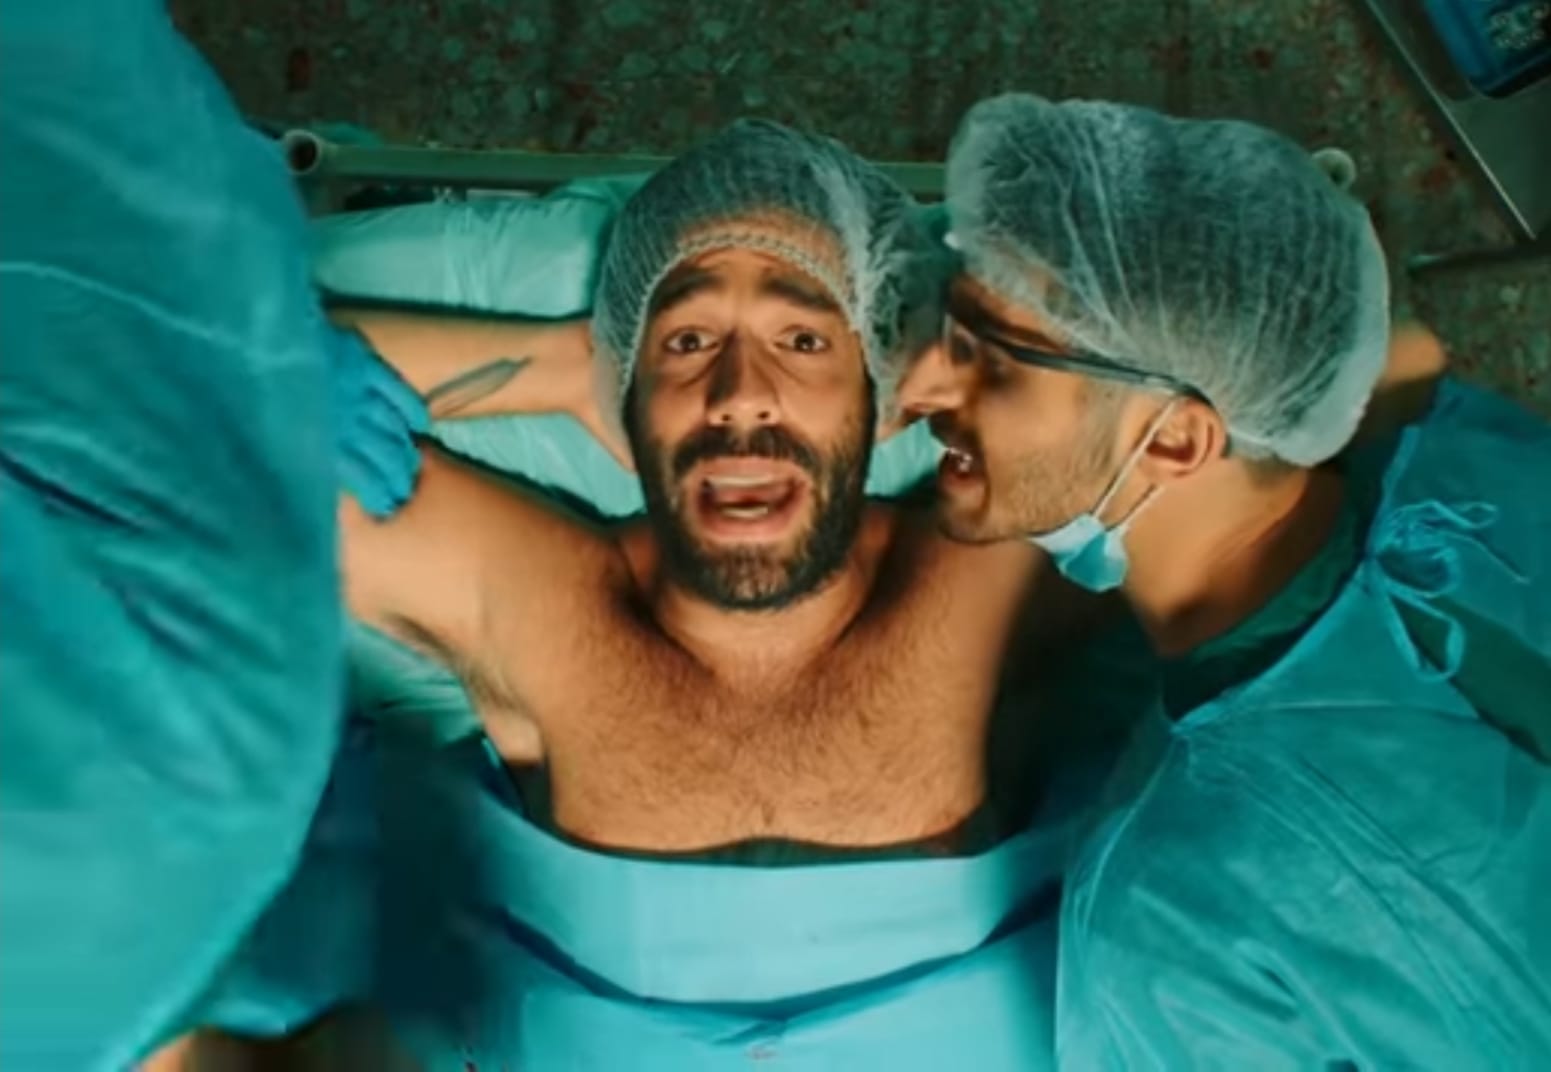 הזמר רביד פלוטניק שוכב על מיטת ניתוחים בחזה חשוף ידיו מאחורי ראשו. ולצידו שחקן בוחן אותו